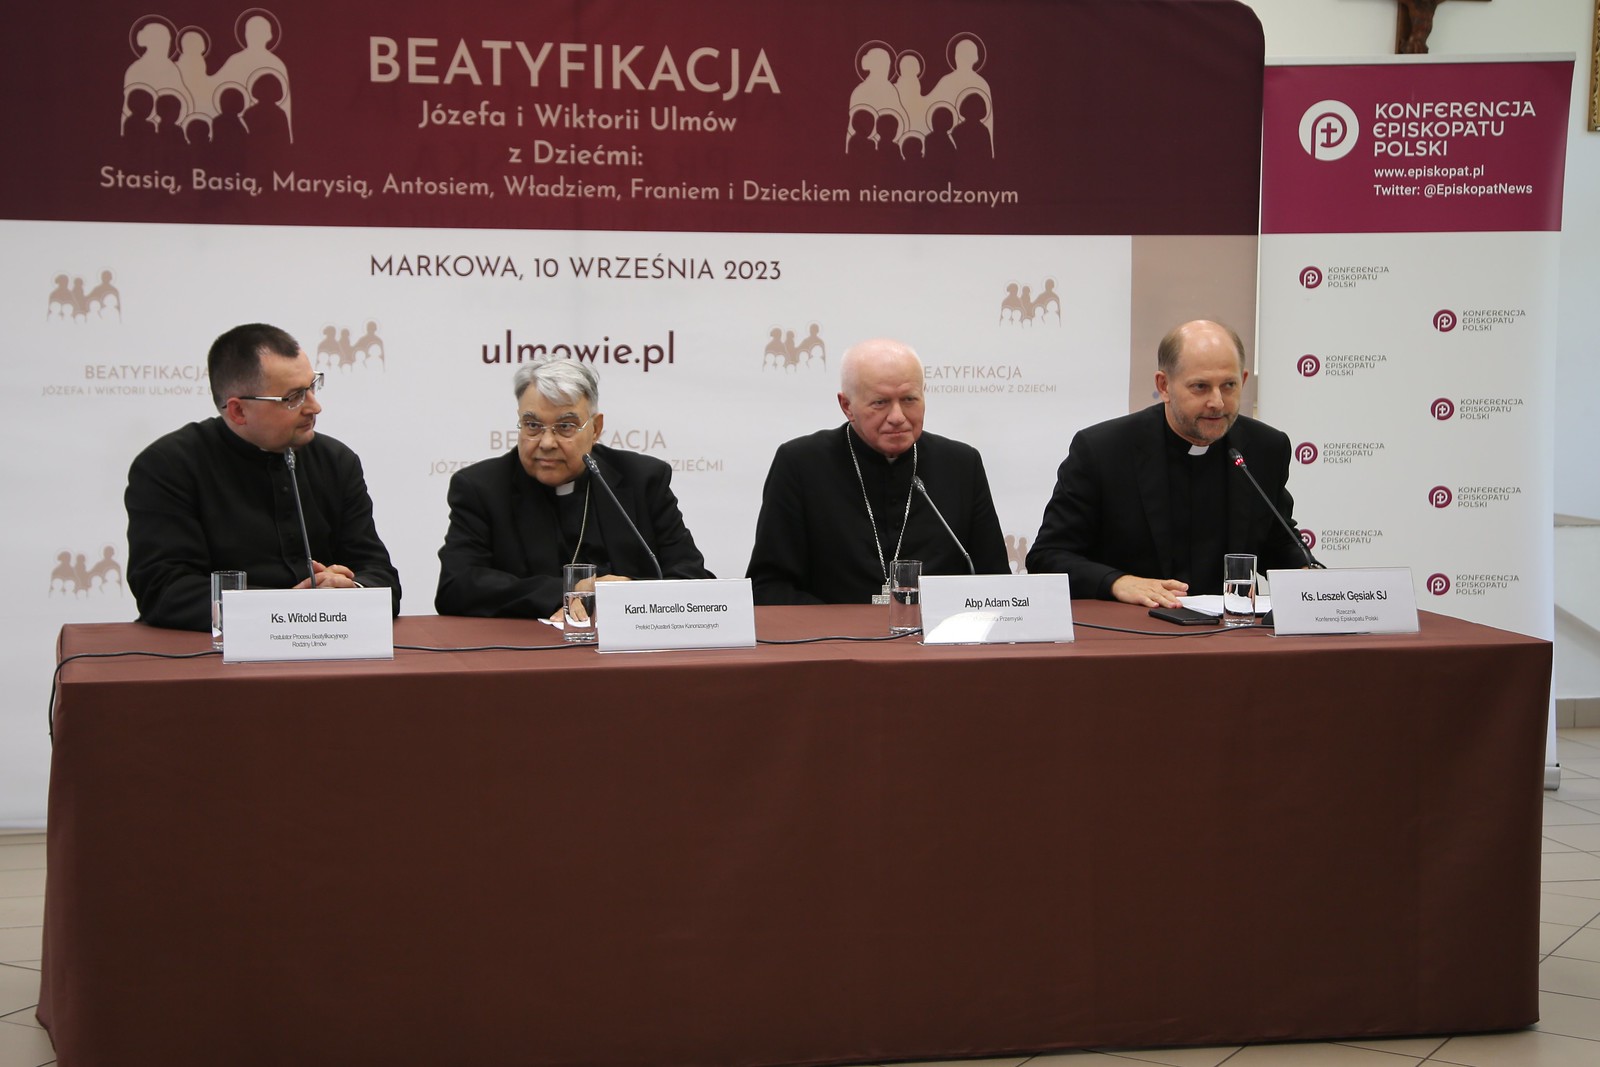 Konferencja prasowa przed beatyfikacją Rodziny Ulmów (Łańcut, 09.09.2023 r.)